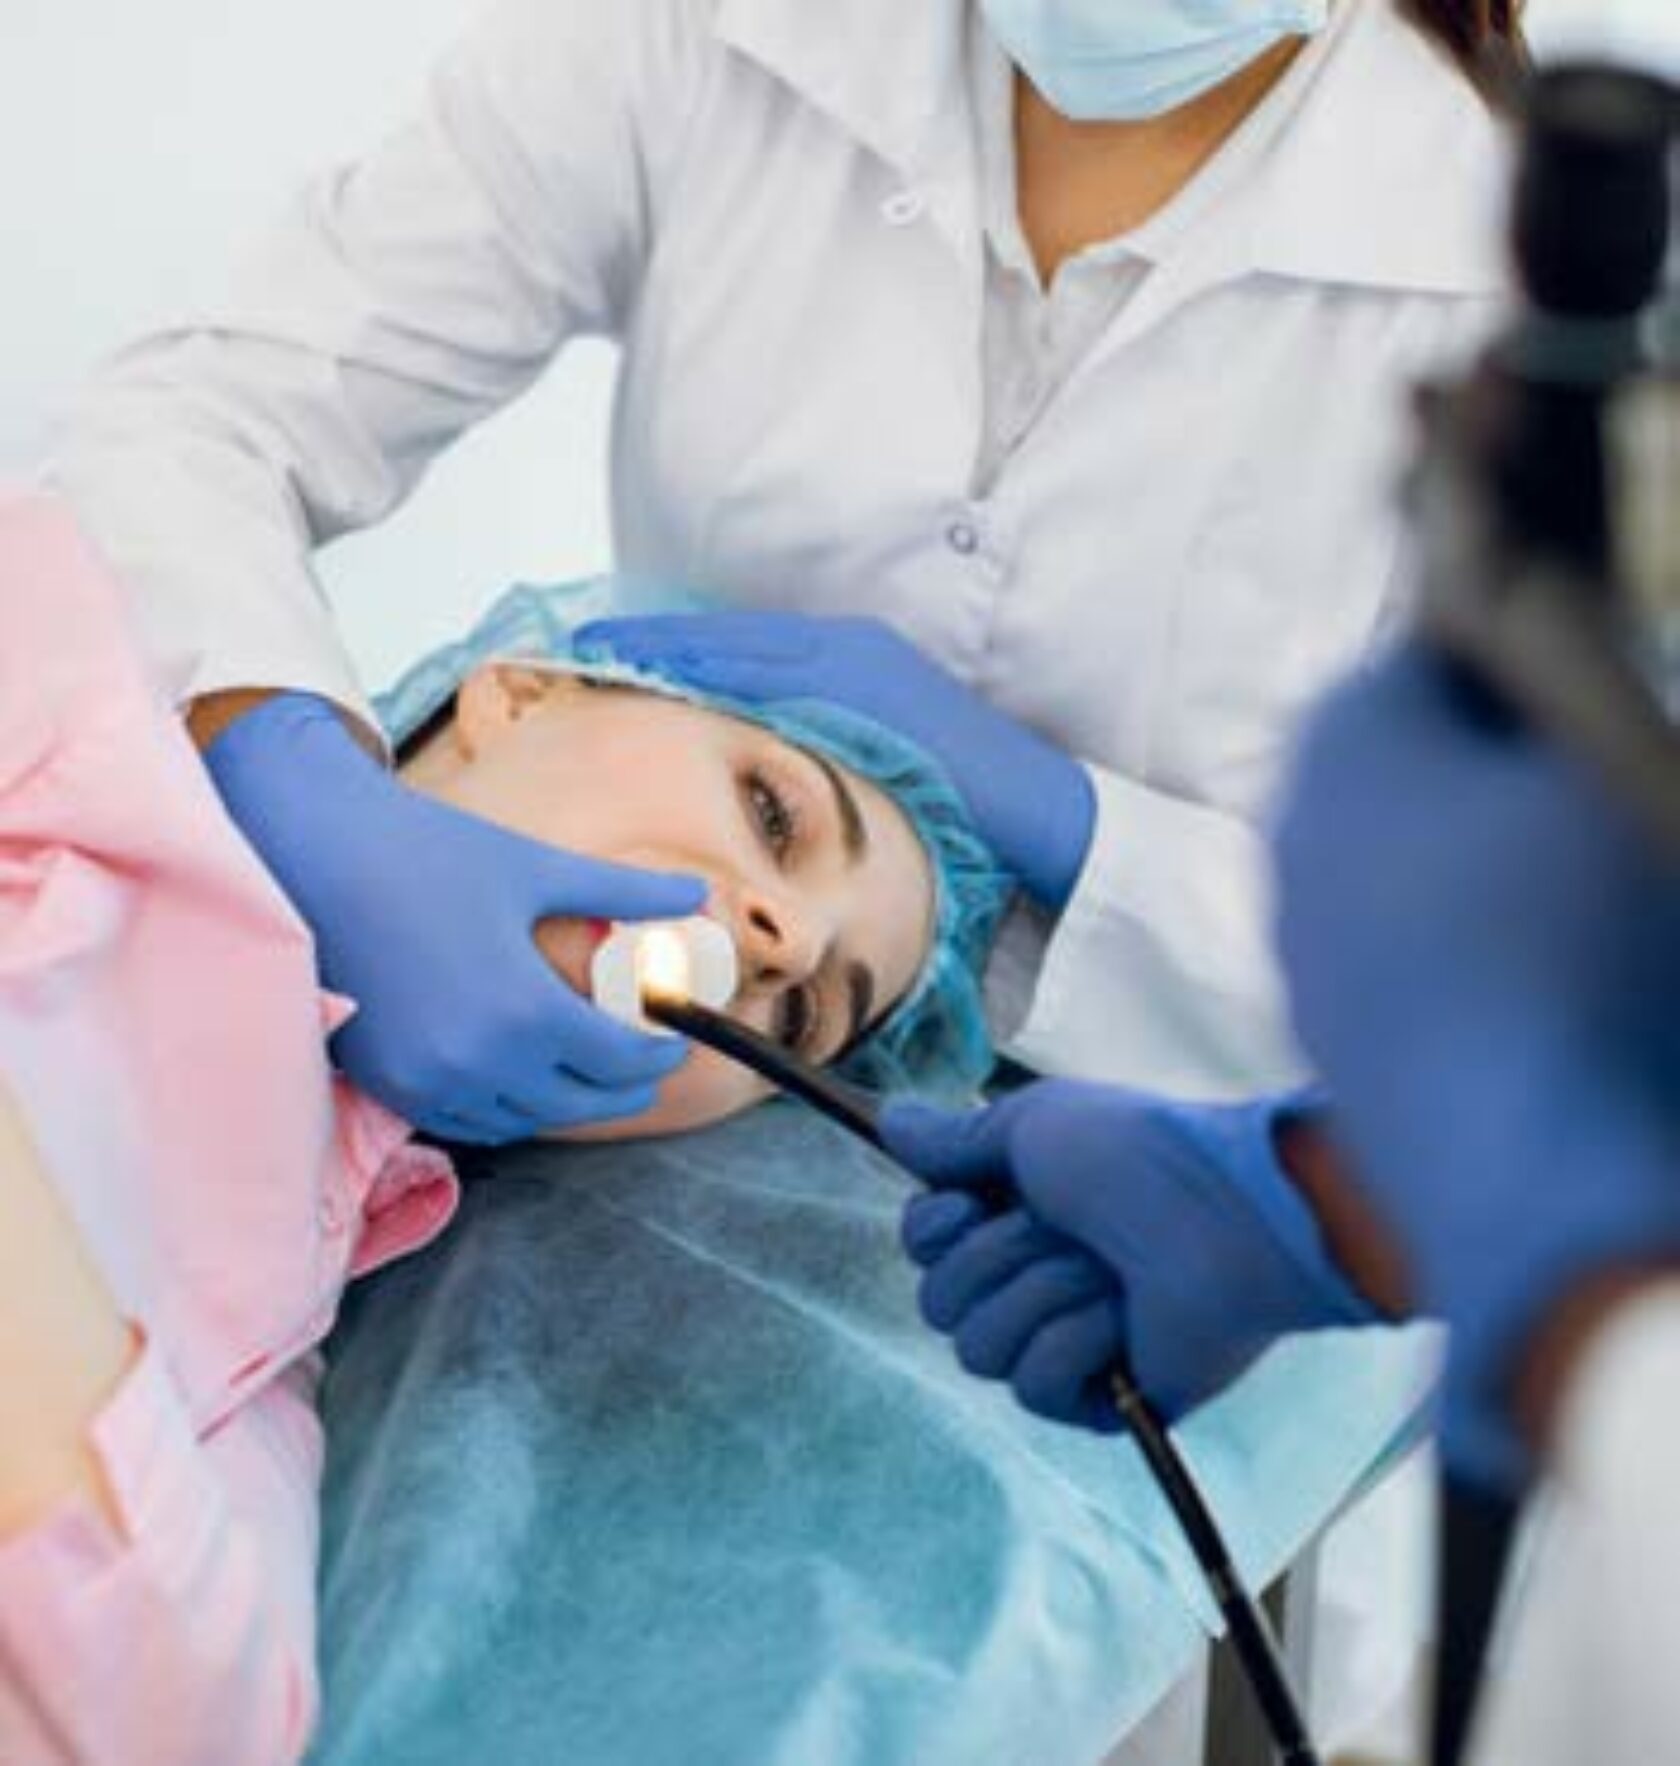 Patientin erhält eine endoskopische Untersuchung des oberen Verdauungstrakts.